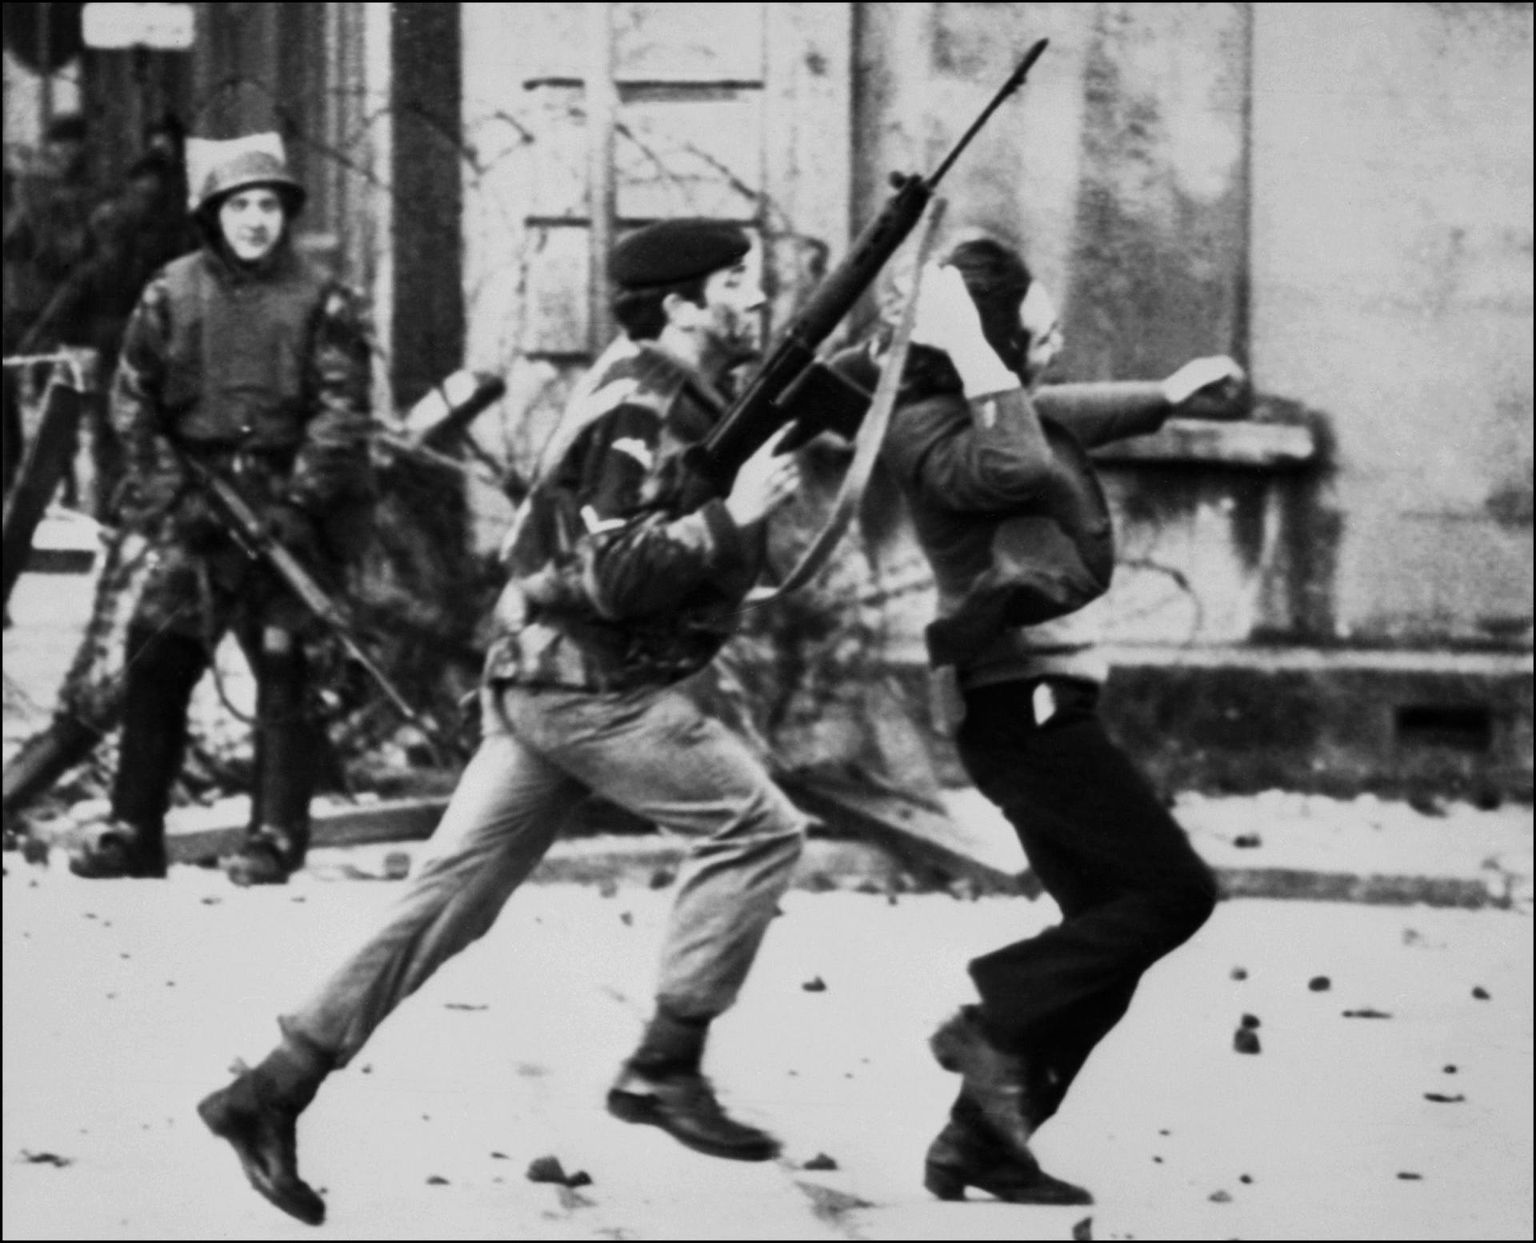 Briti sõdur tirib 30. jaanuaril 1972 verise pühapäeva tapatalgute ajal Derrys kaasa katoliiklasest meeleavaldajat.